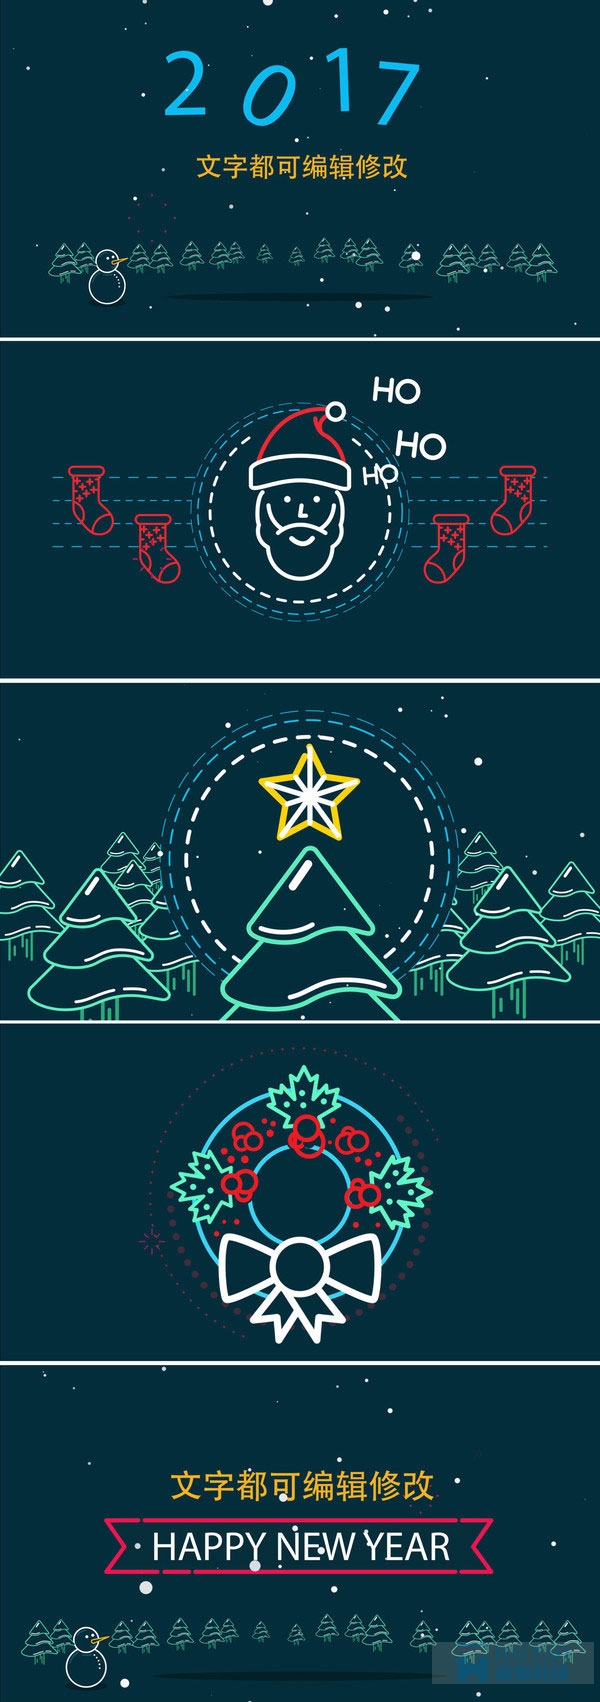 2017年圣诞节电子贺卡设计欣赏